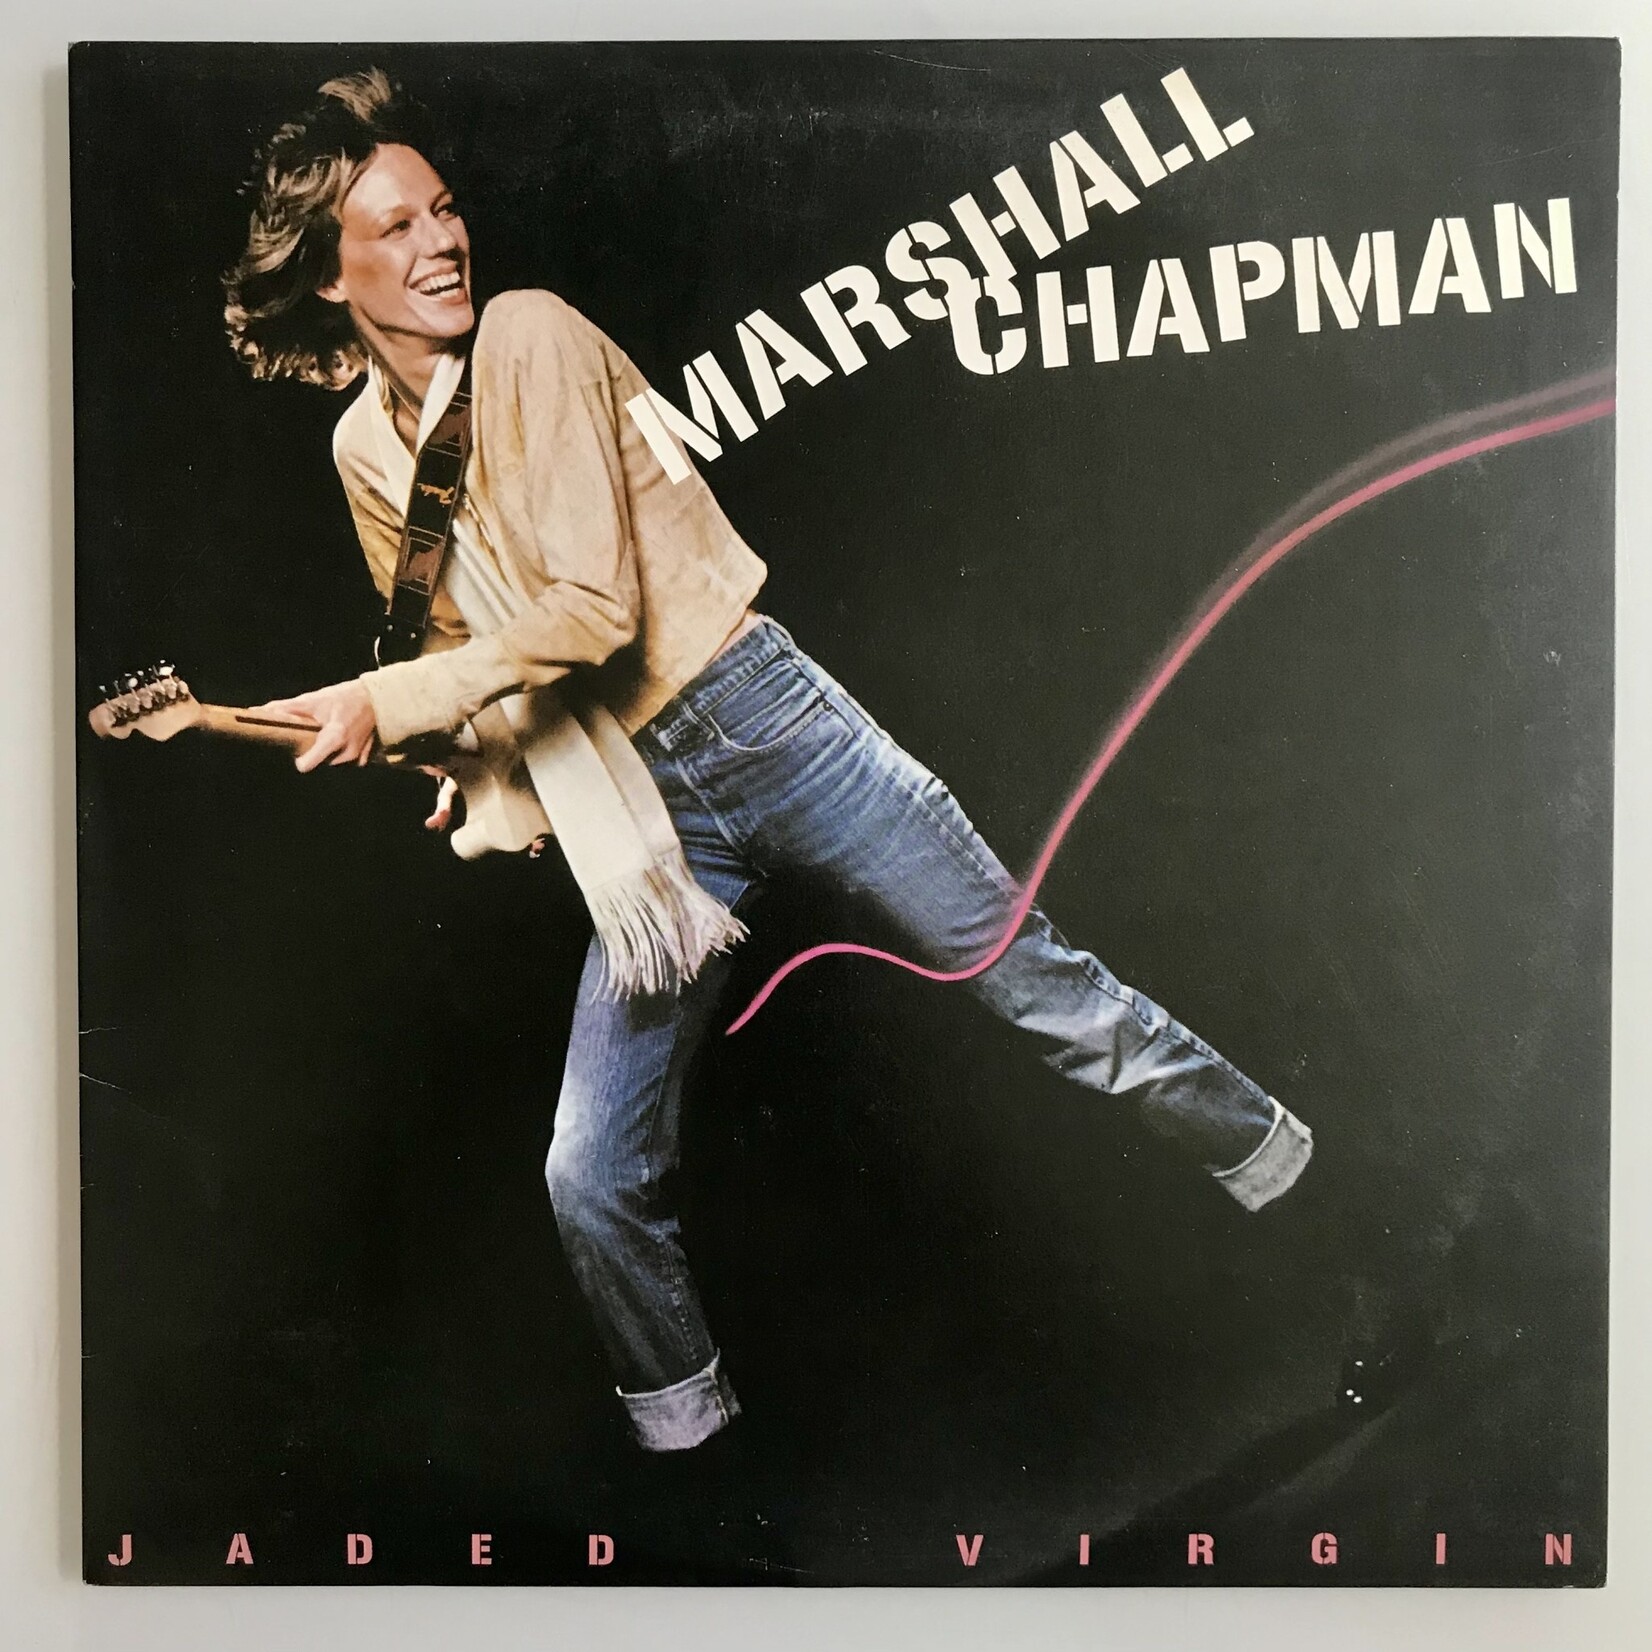 Marshall Chapman - Jaded Virgin - Vinyl LP (USED)